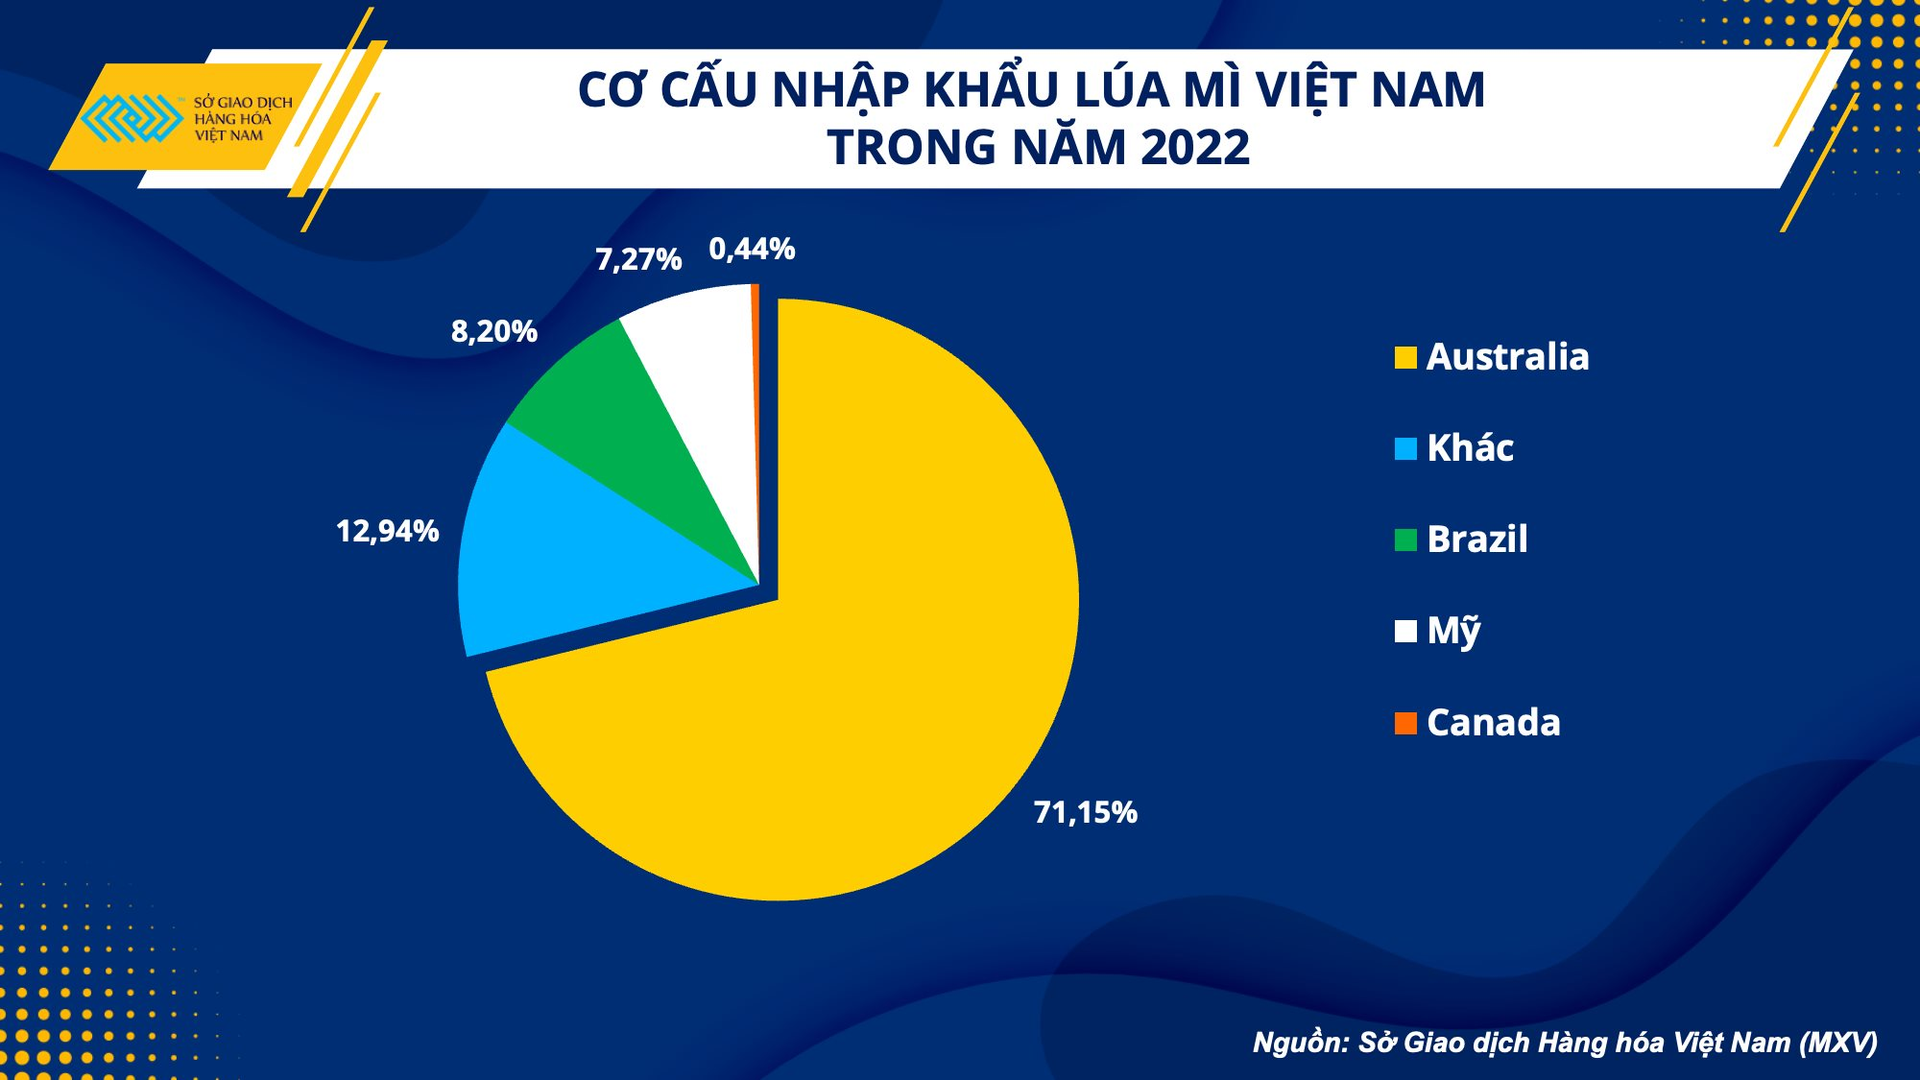 75% lúa mì nhập khẩu của Việt Nam phụ thuộc vào quốc gia này - tìm nguồn cung mới ở đâu? - Ảnh 2.